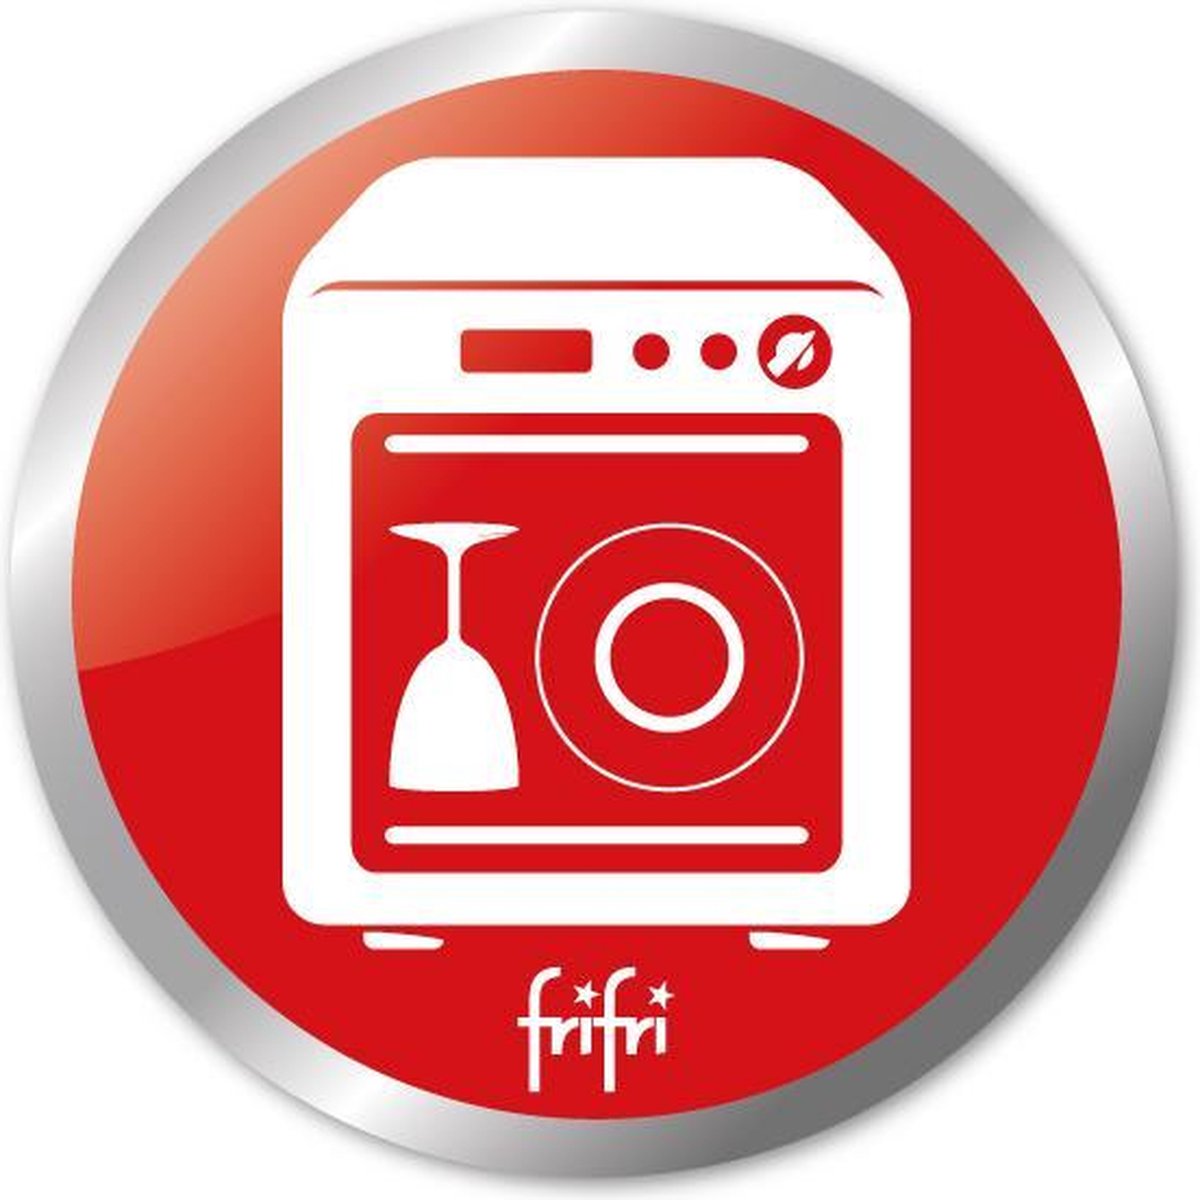 elk hulp in de huishouding door elkaar haspelen Frifri 1900 Frituurpan | bol.com